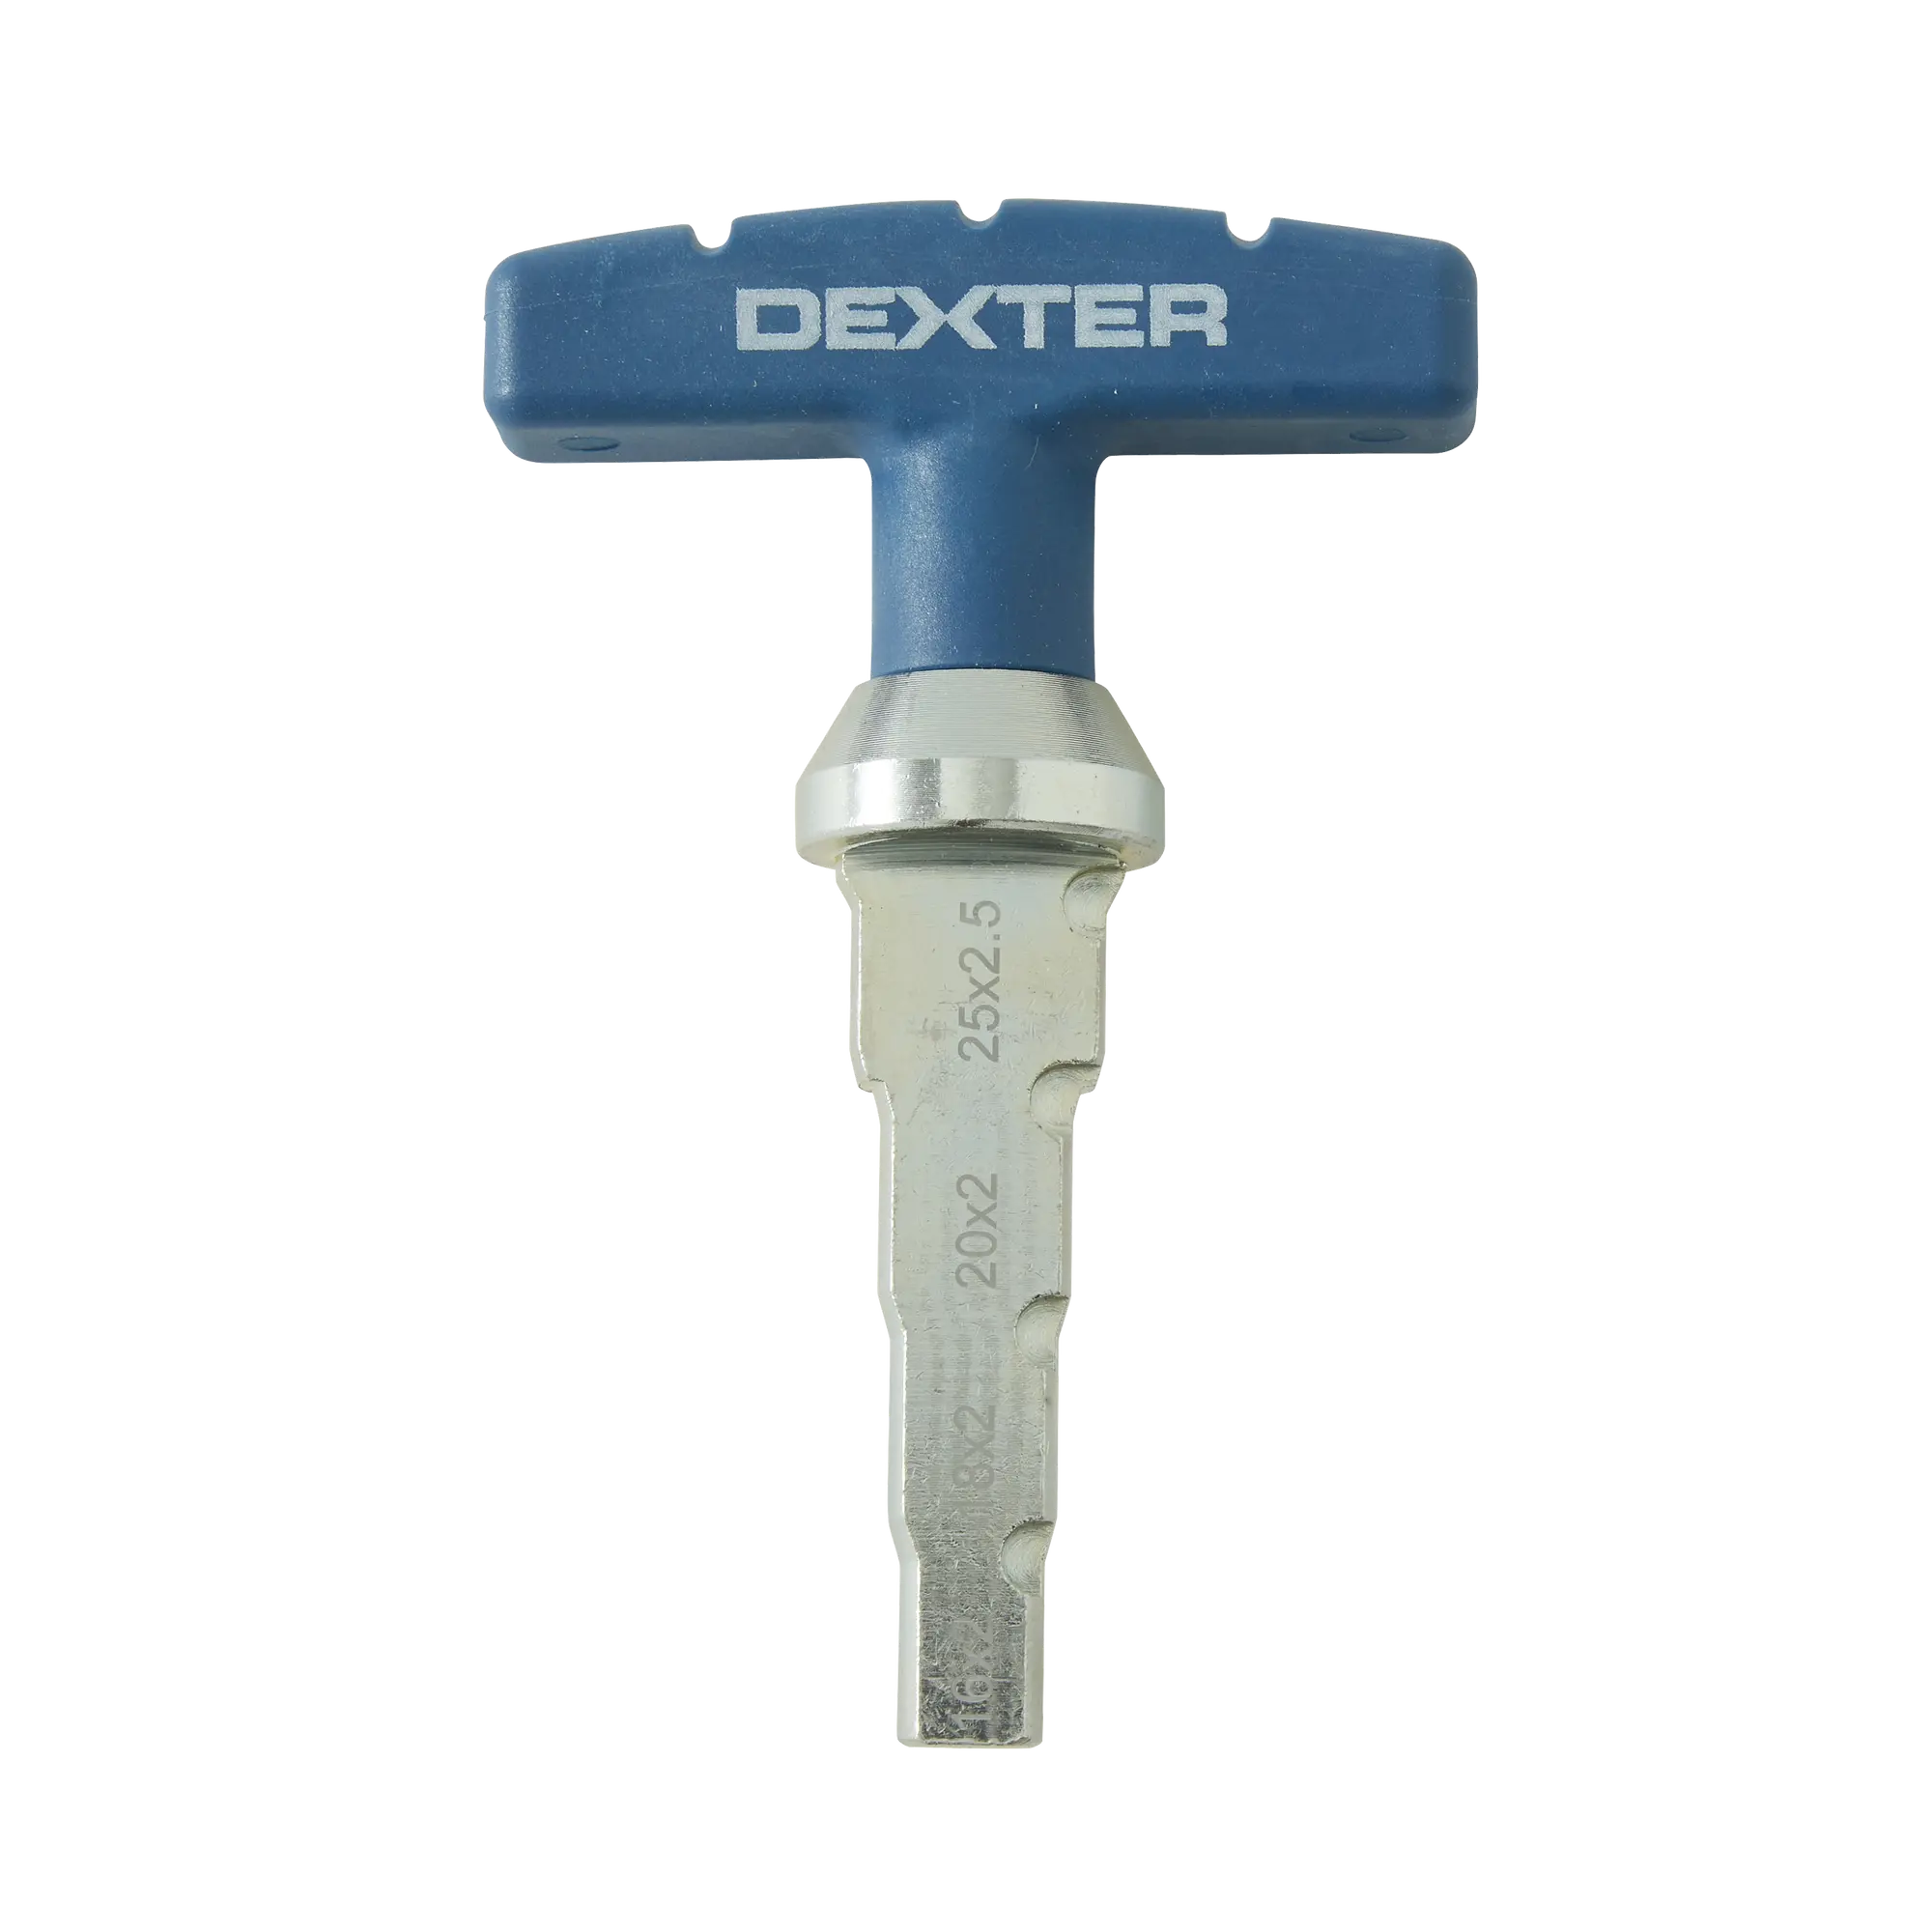 Abocinador dexter para tubos de 16 a 25 mm